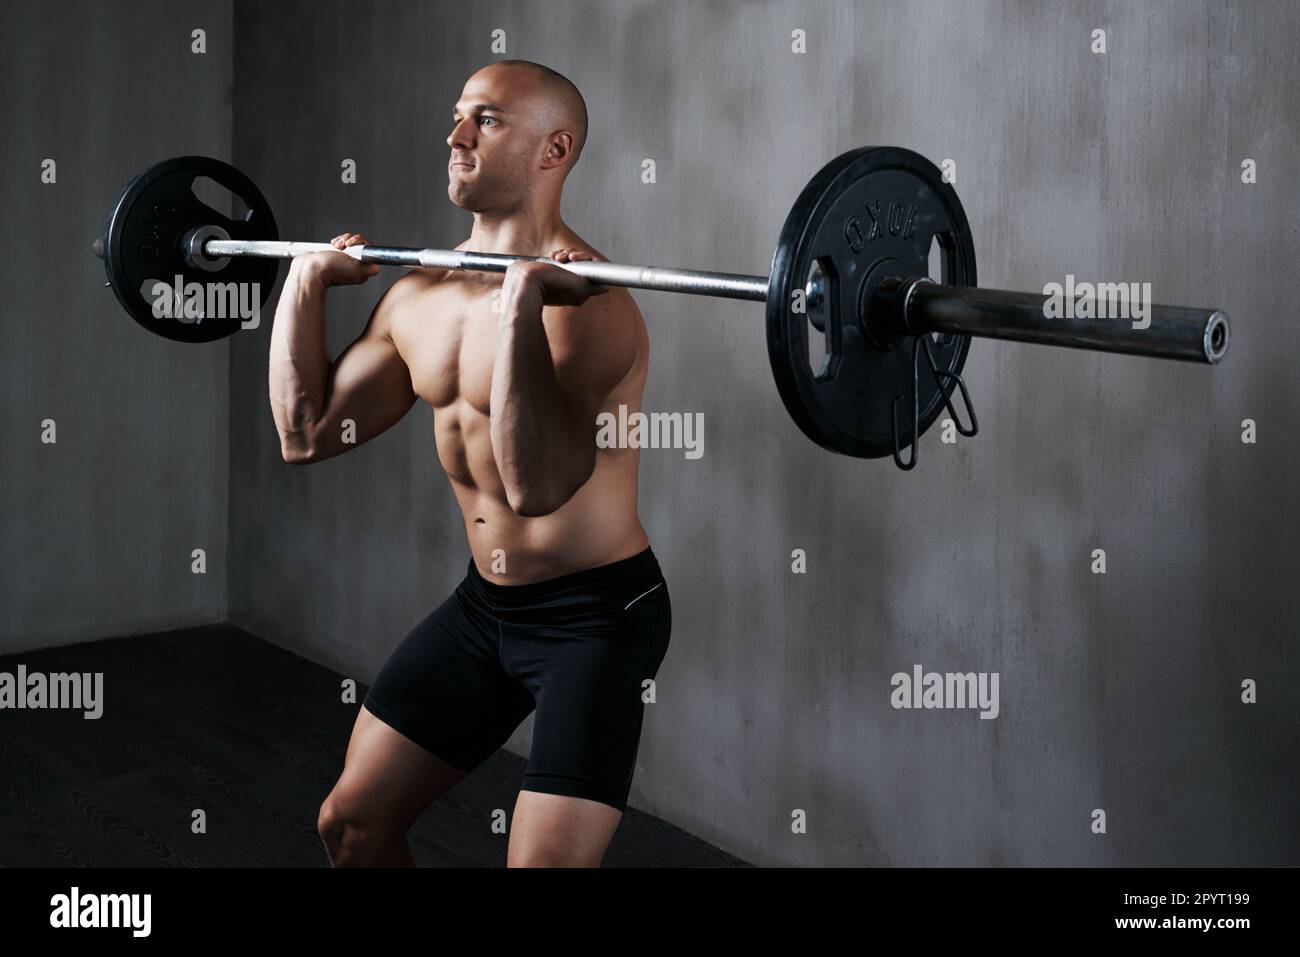 https://c8.alamy.com/compes/2pyt199/fitness-hombre-y-levantamiento-de-pesas-con-barra-para-hacer-ejercicio-ejercicio-o-entrenamiento-en-el-gimnasio-ajuste-activo-y-fuerte-musculoso-masculino-que-levanta-el-peso-para-2pyt199.jpg